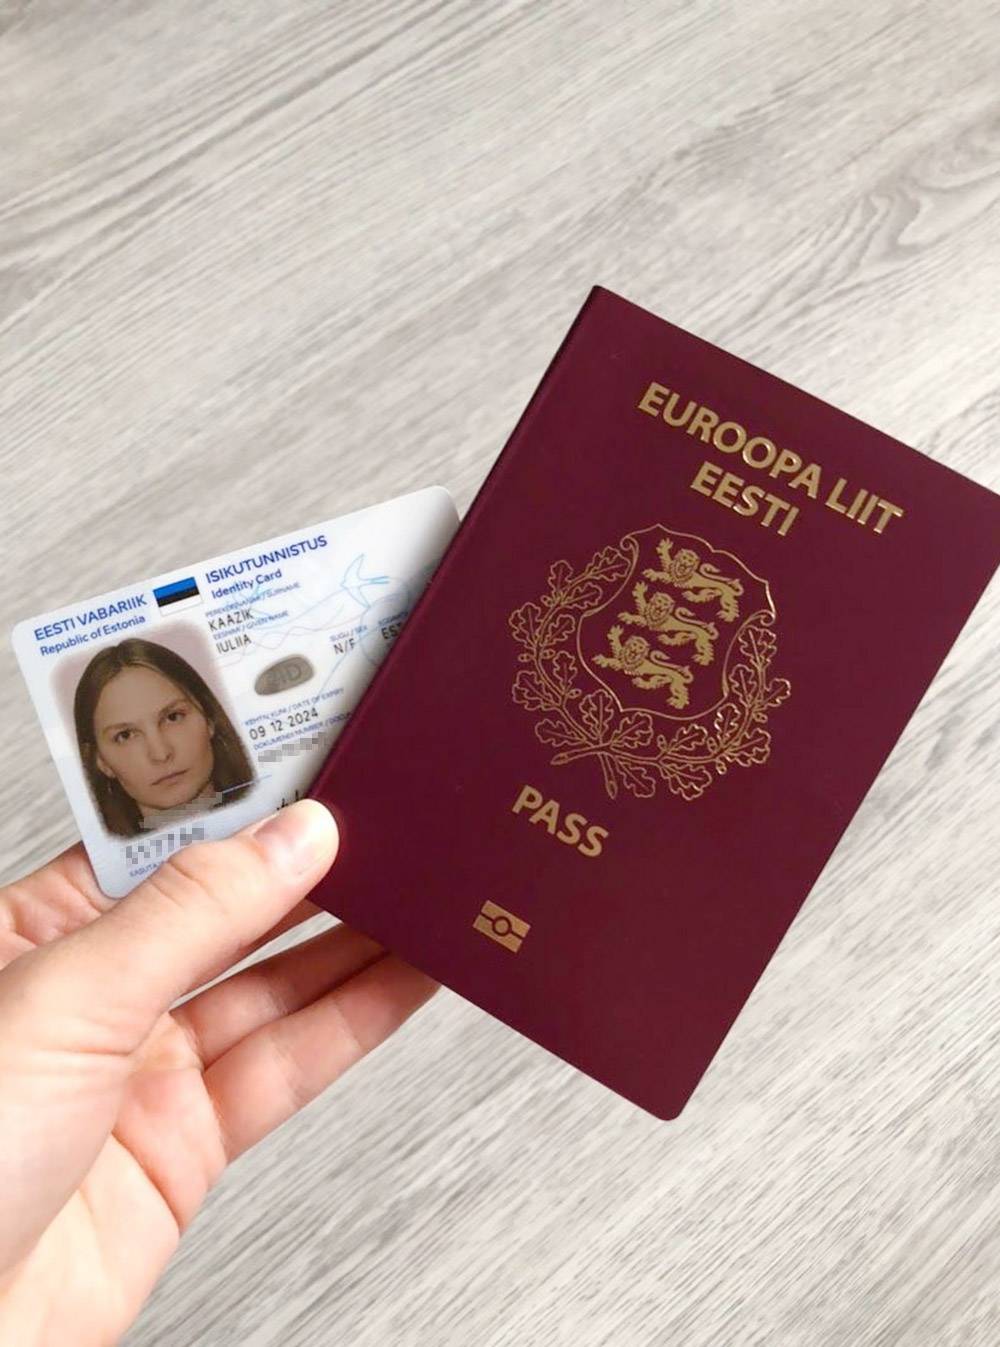 Мои новенькие паспорт и ID-карта. Планировала обмыть их поездкой в Европу на майские праздники, но в 2020&nbsp;году у коронавируса свои планы. Поездку пришлось отложить на неопределенный срок